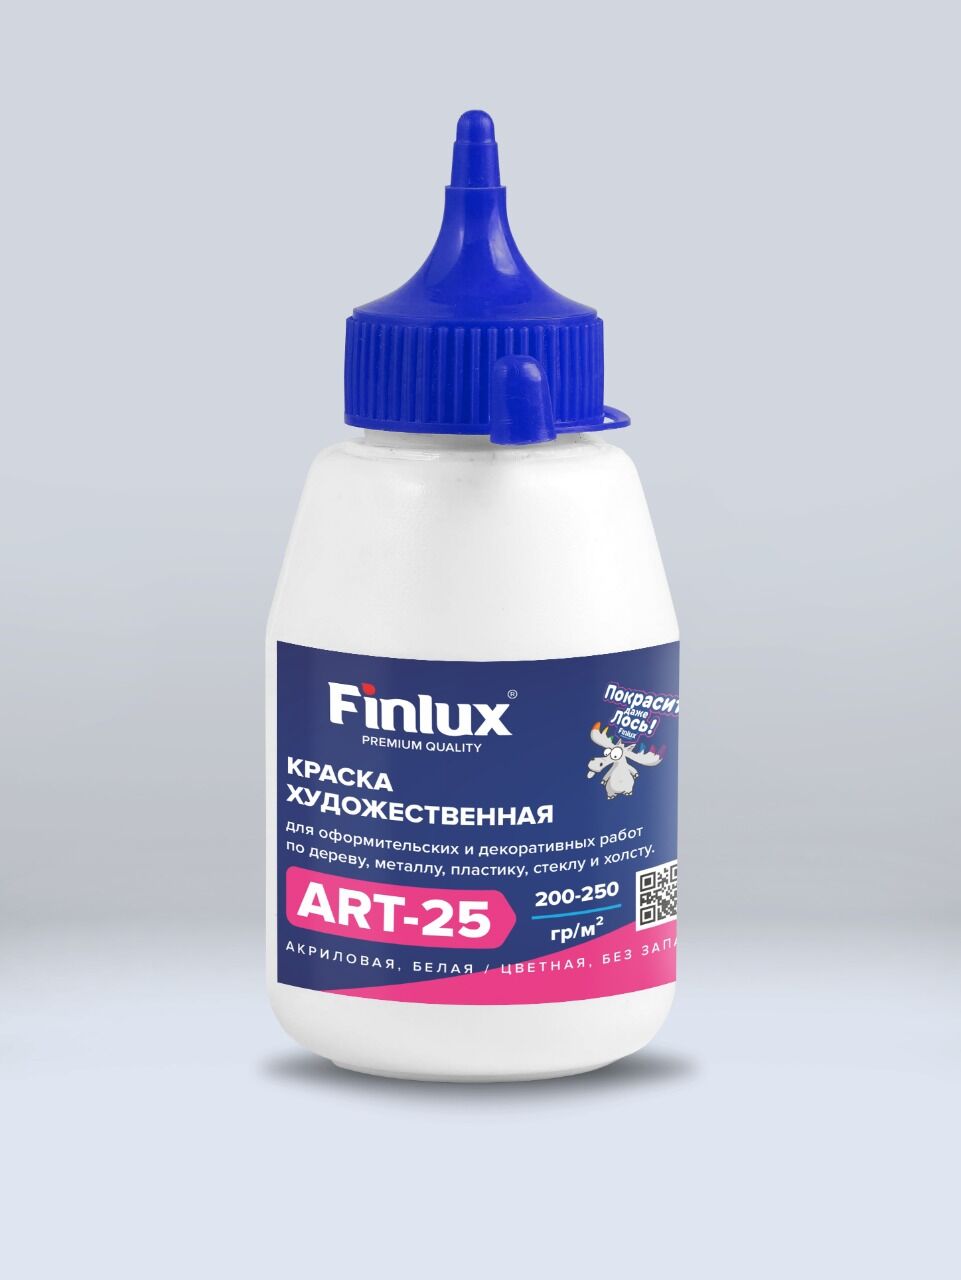 Акриловая краска художественная для рисования Вишня, 0,3 кг Finlux ART 25 –матовая